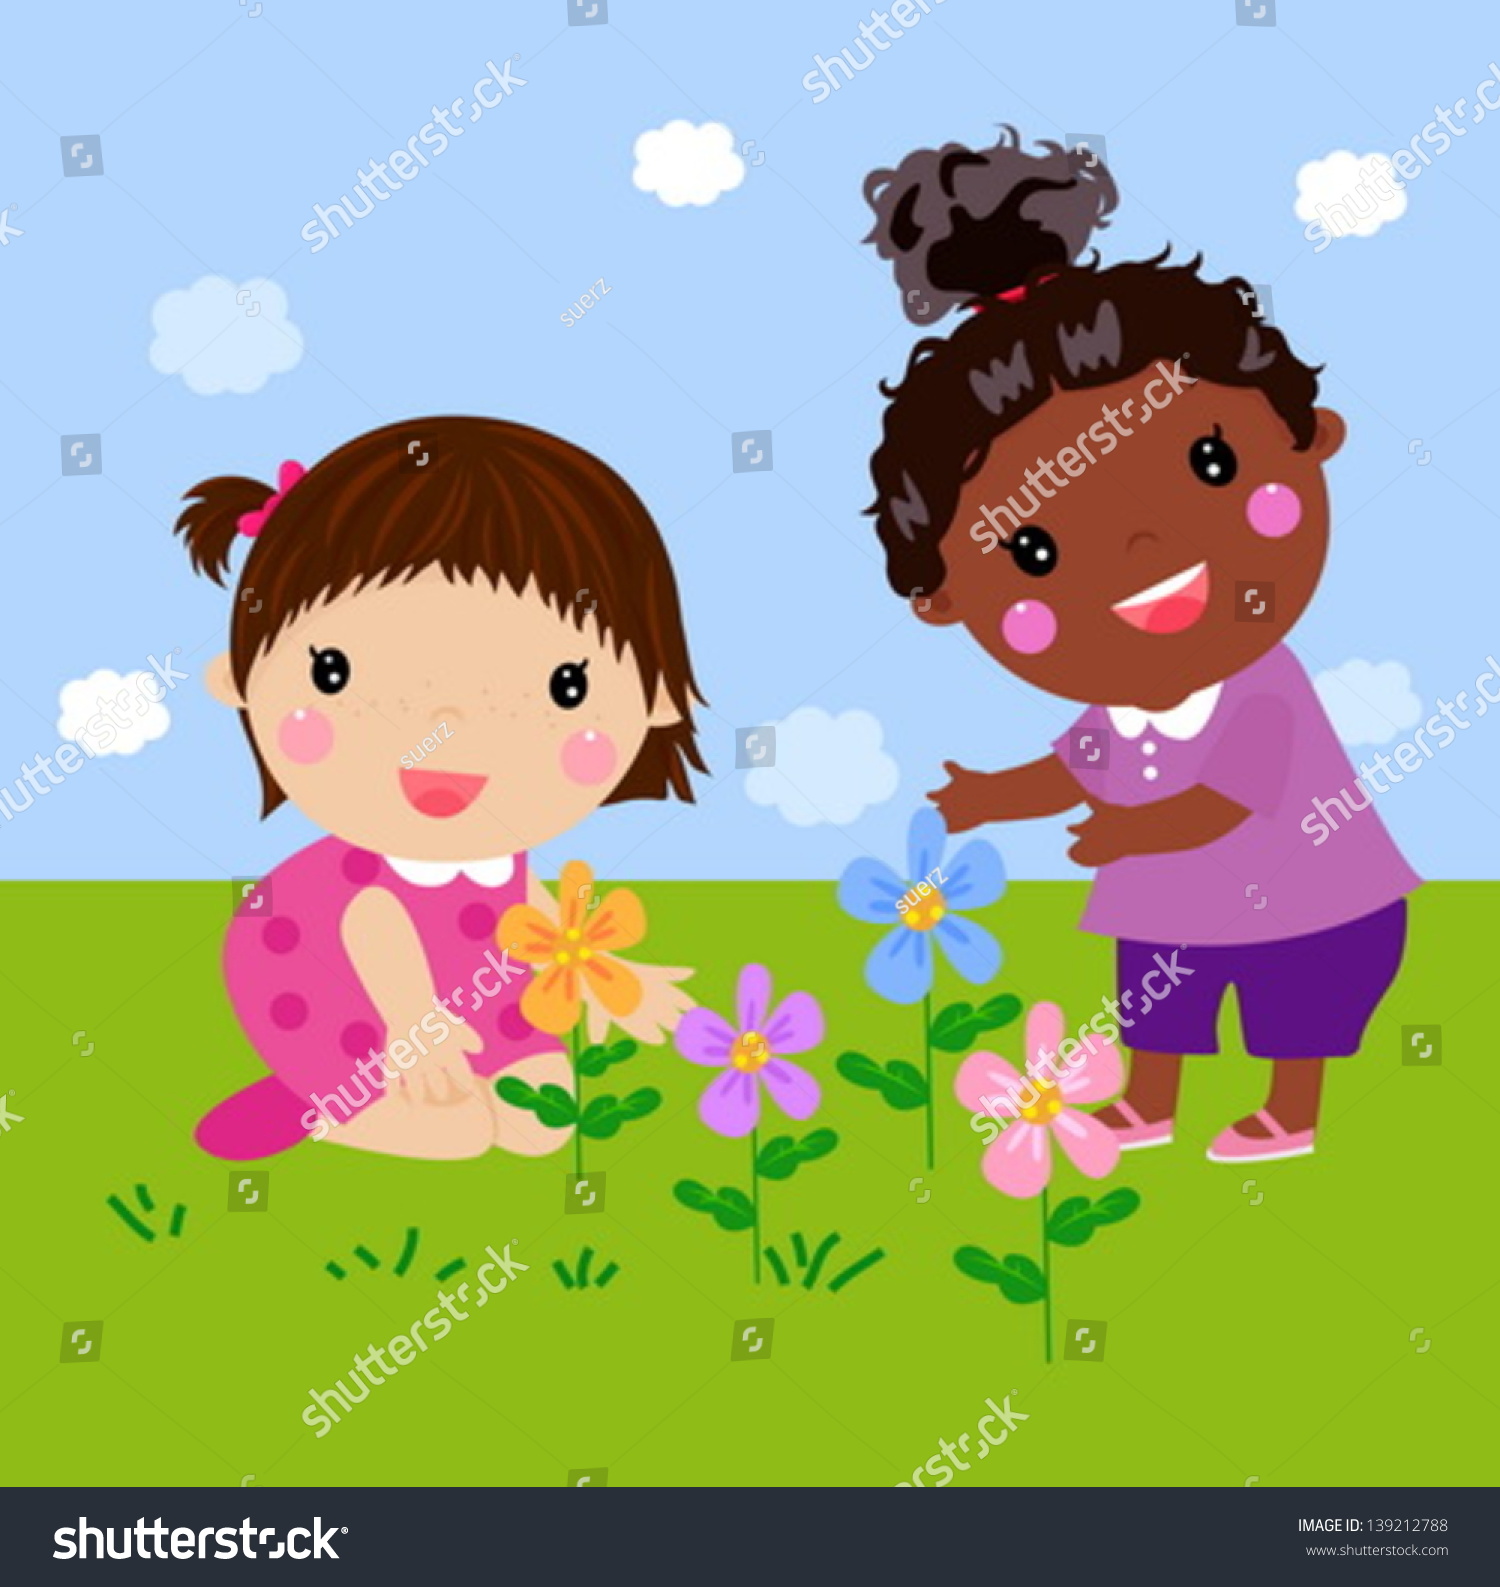 Kids Flower Stock Vector 139212788 - Shutterstock